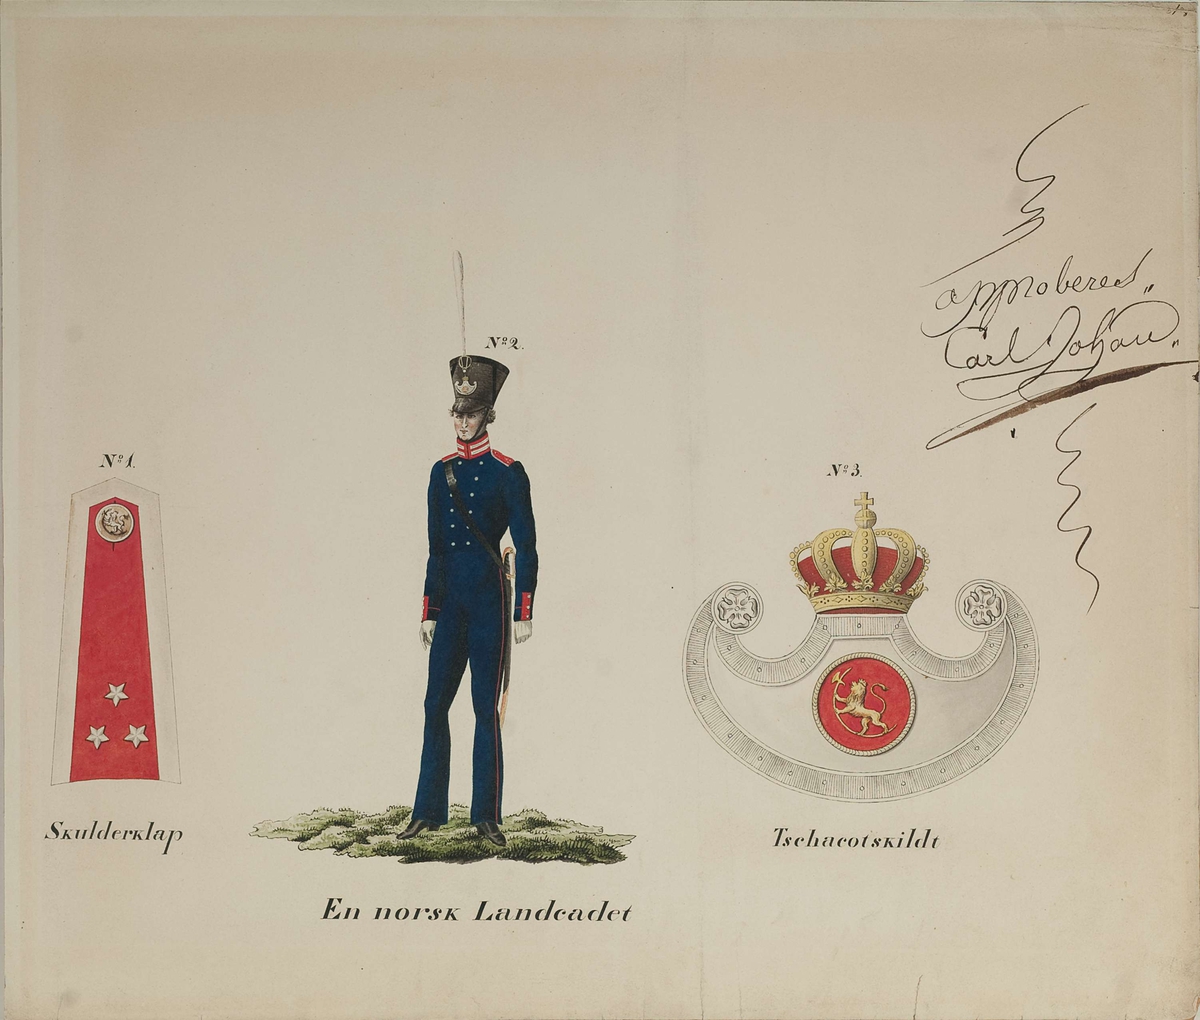 Approbasjonstegning av skulderklaff, uniform og chakotskilt for landkadett, approbert av Carl Johan 1830. Tekst: En norsk Landcadet.